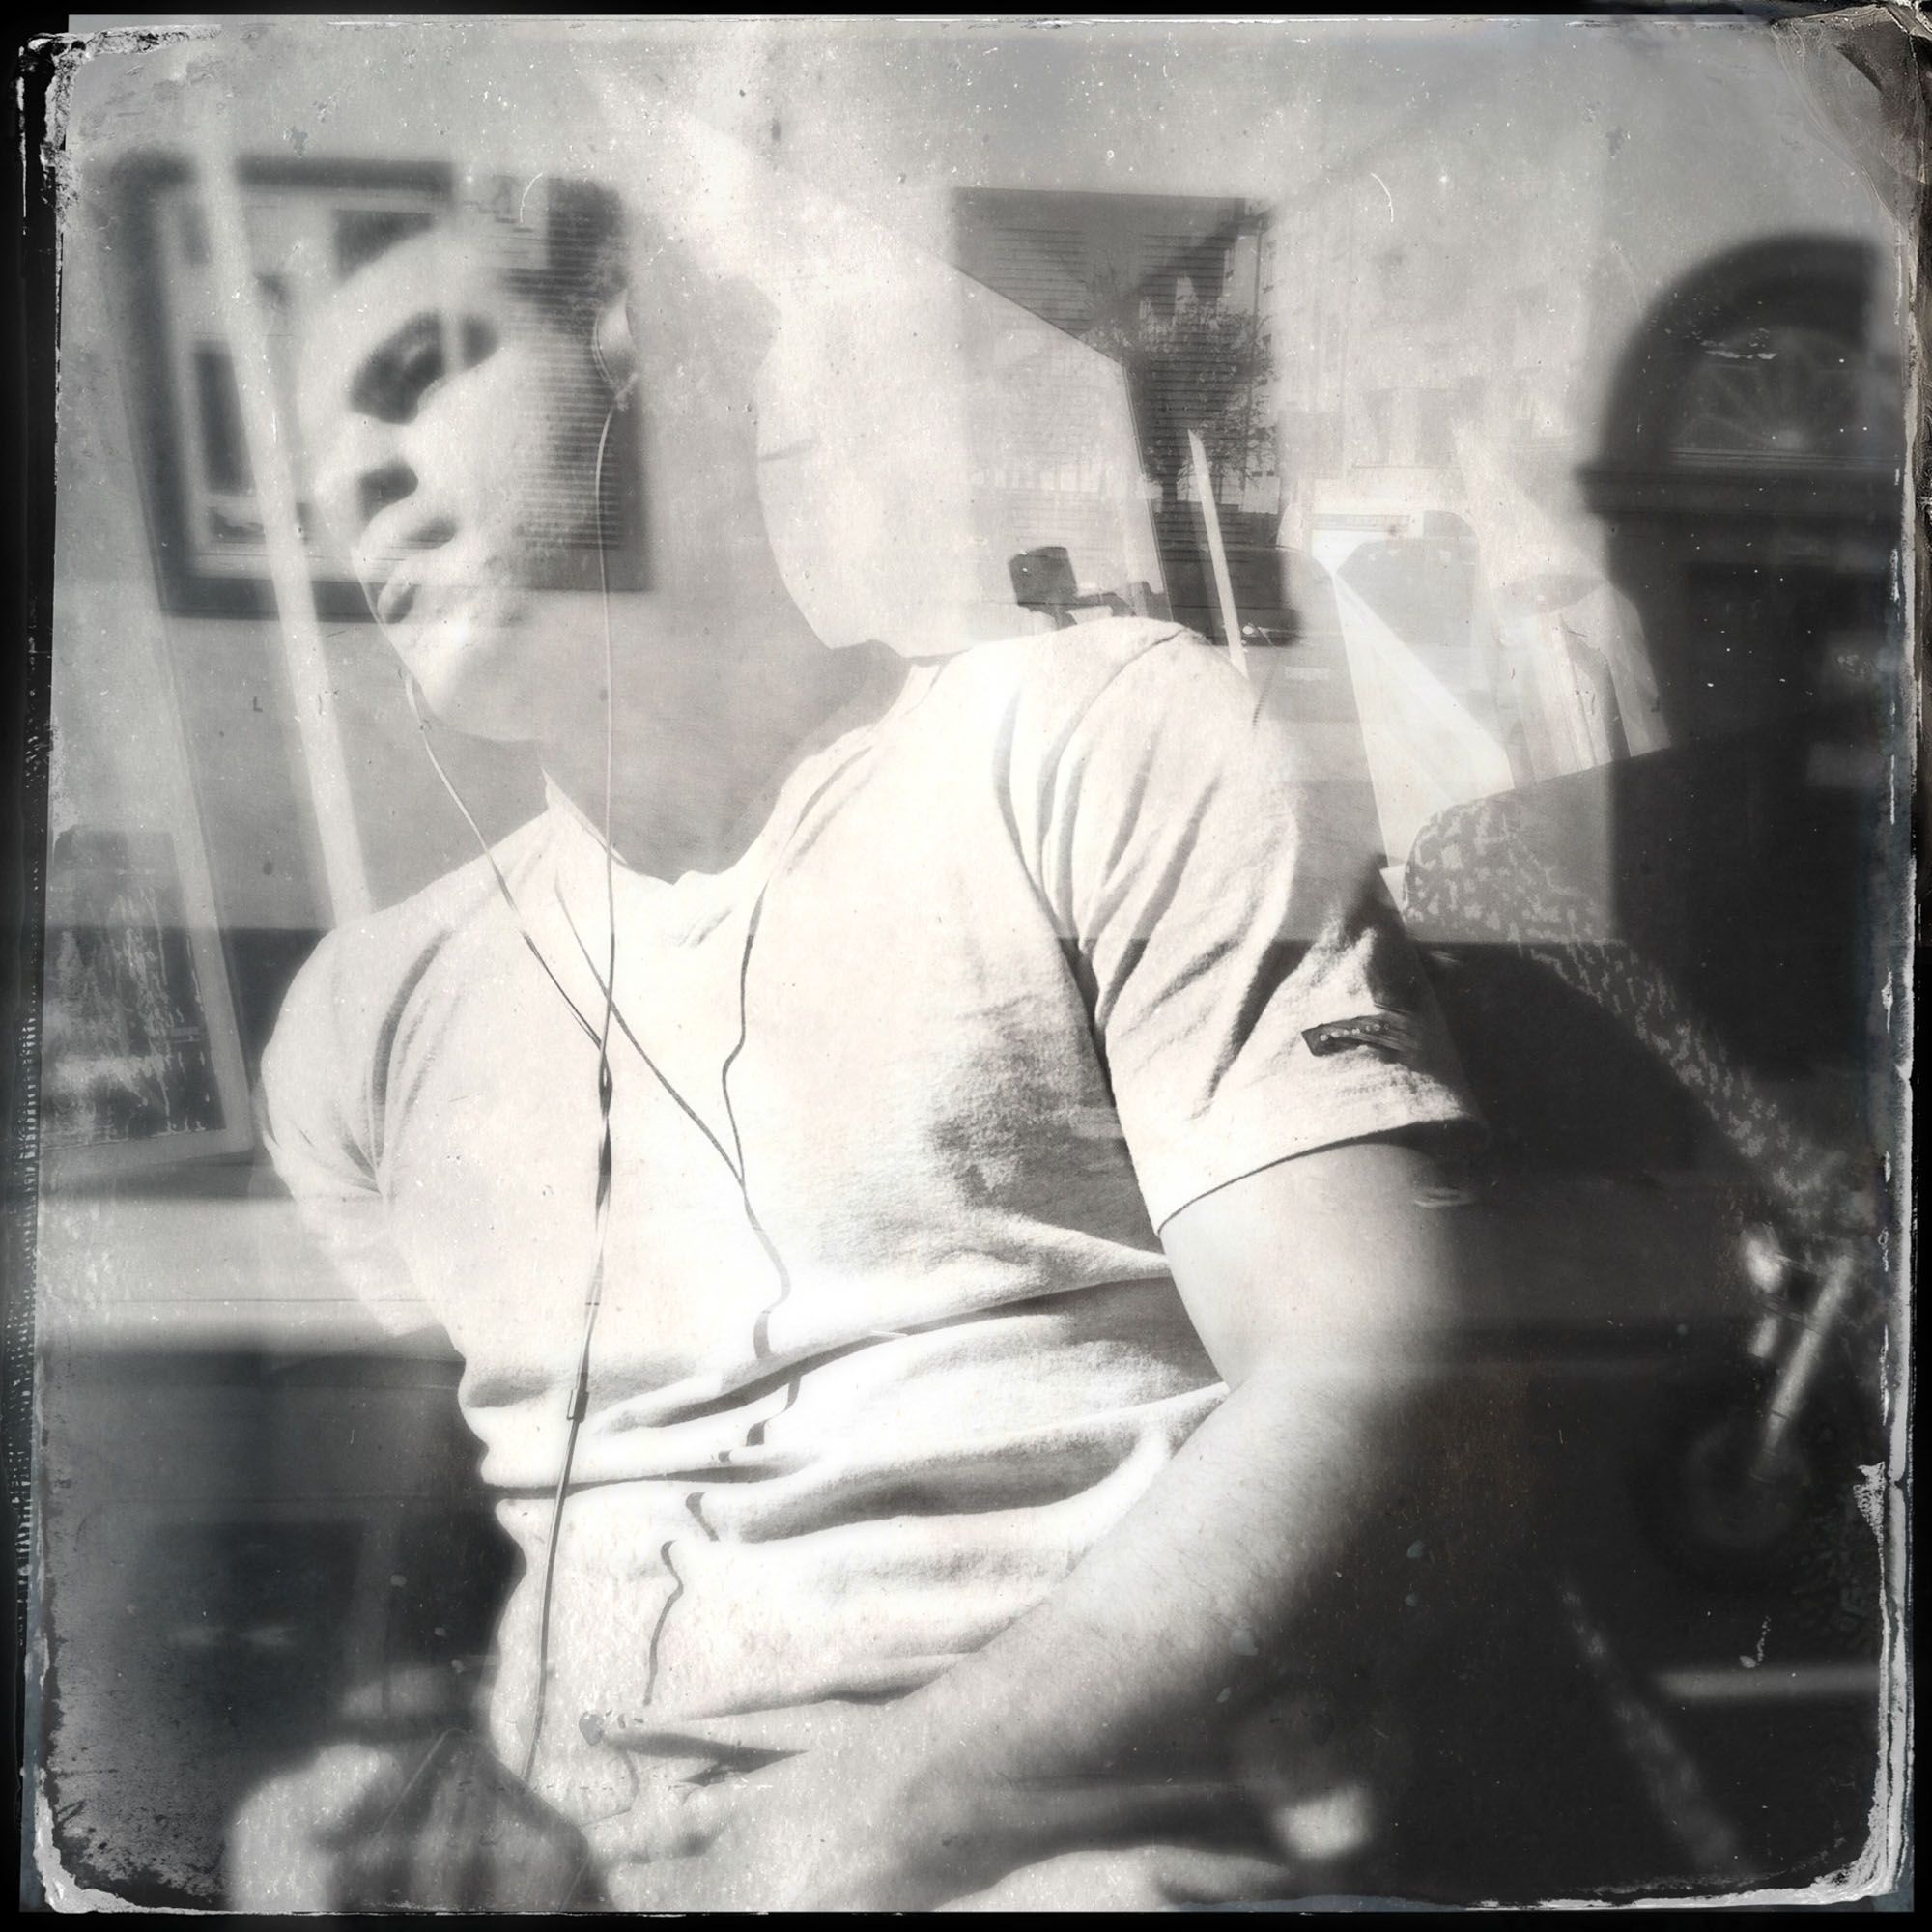 Das quadratische Schwarzweiß-Bild aus der Fotografieserie "Hipstamatic Ghosttrain" des Fotografen Fritz Phillipp aus Frankfurt im Rhein-Main-Gebiet, wurde in Köln aufgenommen und portraitiert einen jungen Mann mit Kopfhörern im Bus, hinter der Doppelbelichtung einer Hausfassade